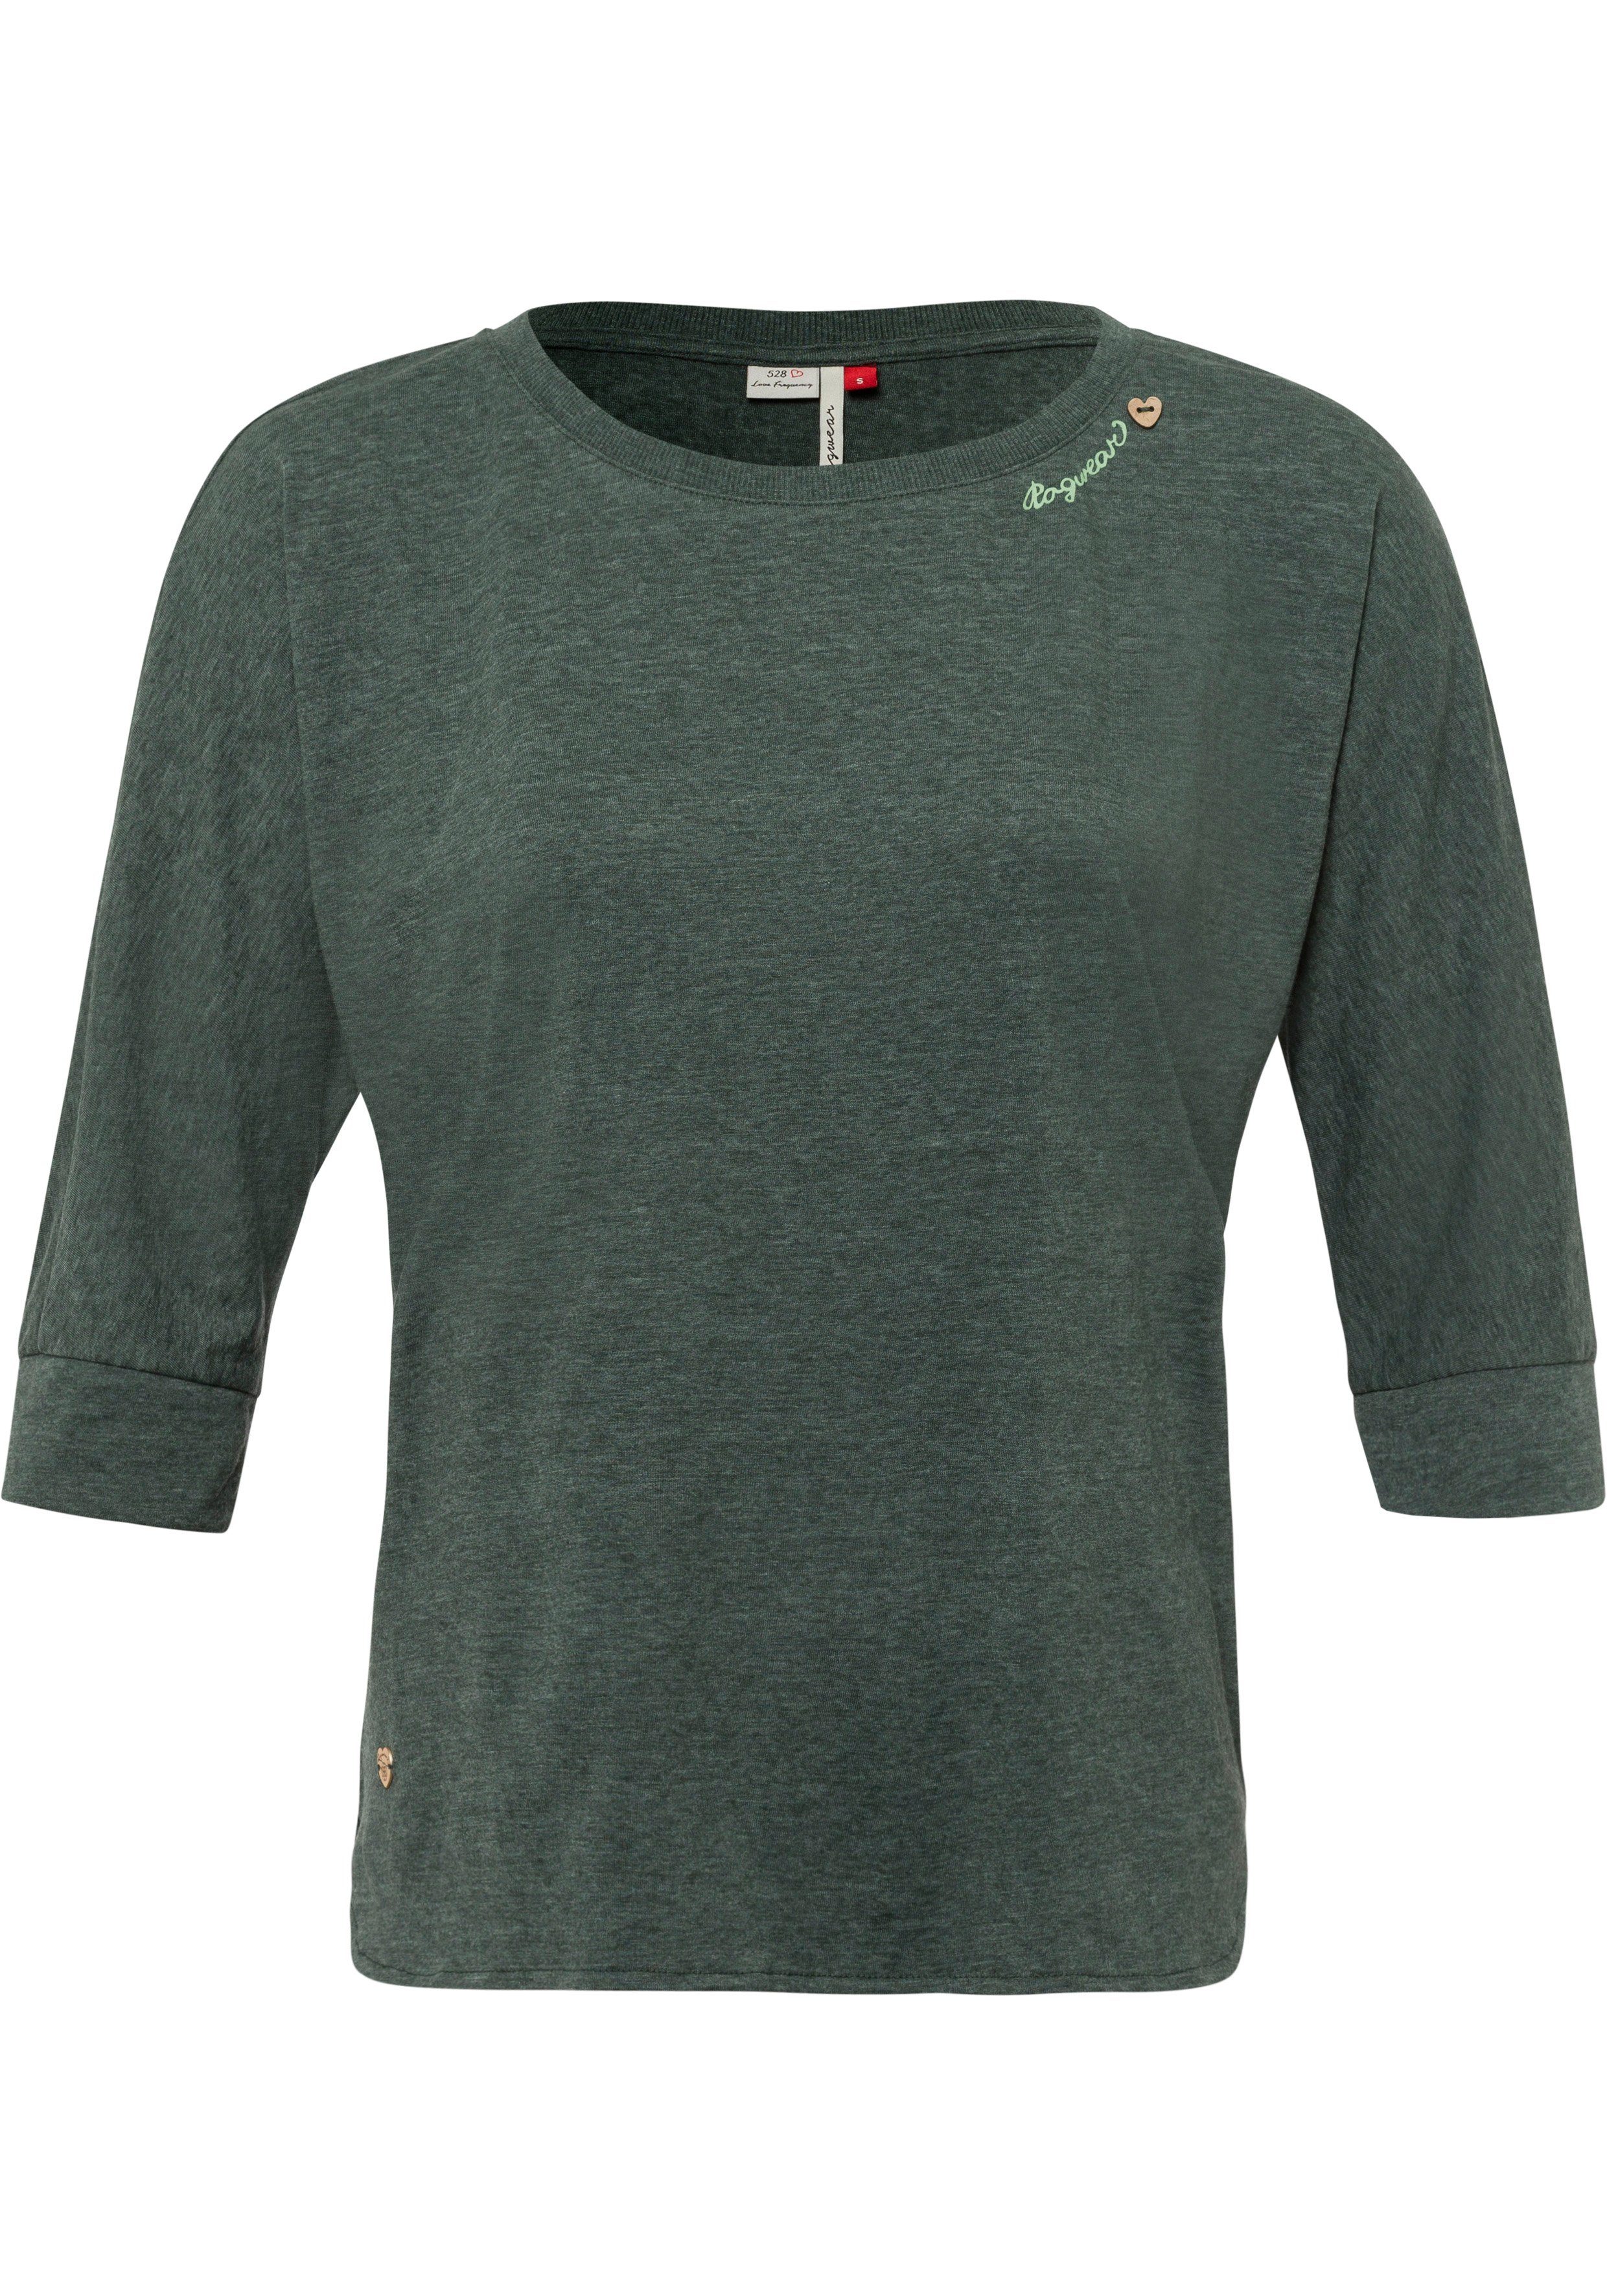 mit Herz-Design im dark Ragwear SHIMONA green Zierknopfbesatz T-Shirt in Holzoptik natürlicher